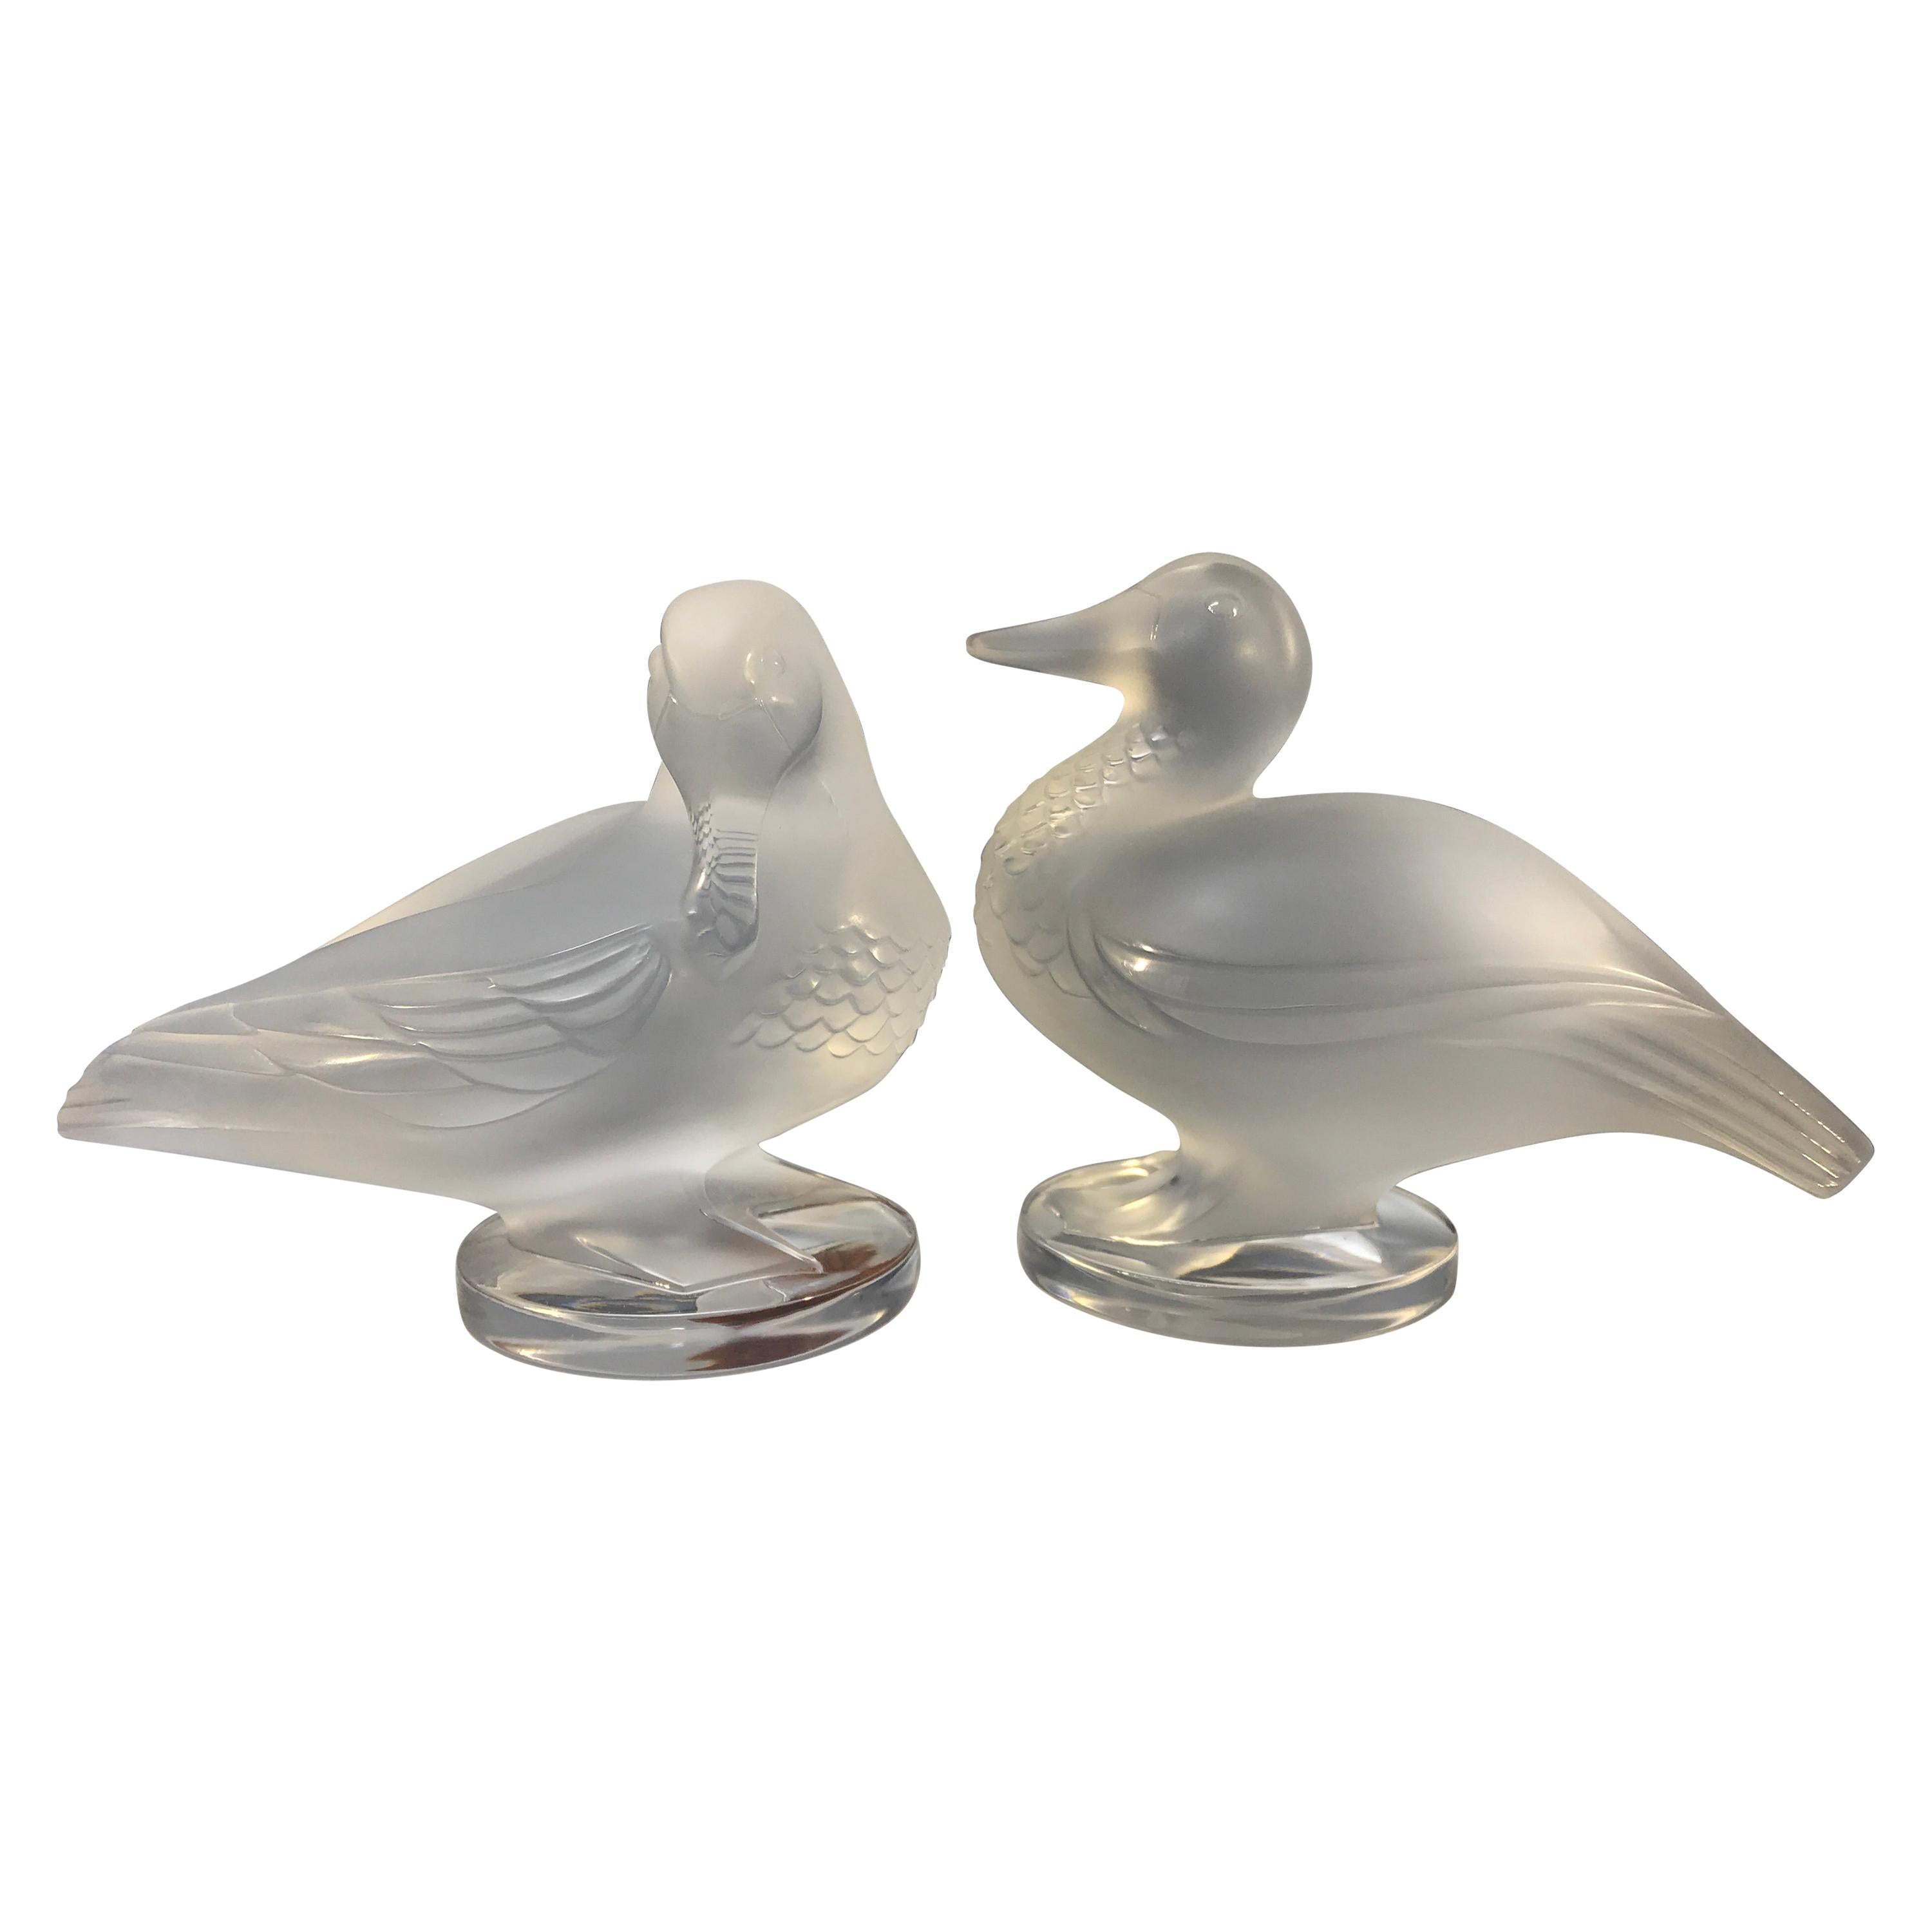 Lalique 'Paire De Canards' Pair of Exquisite Lalique Crystal Ducks, France